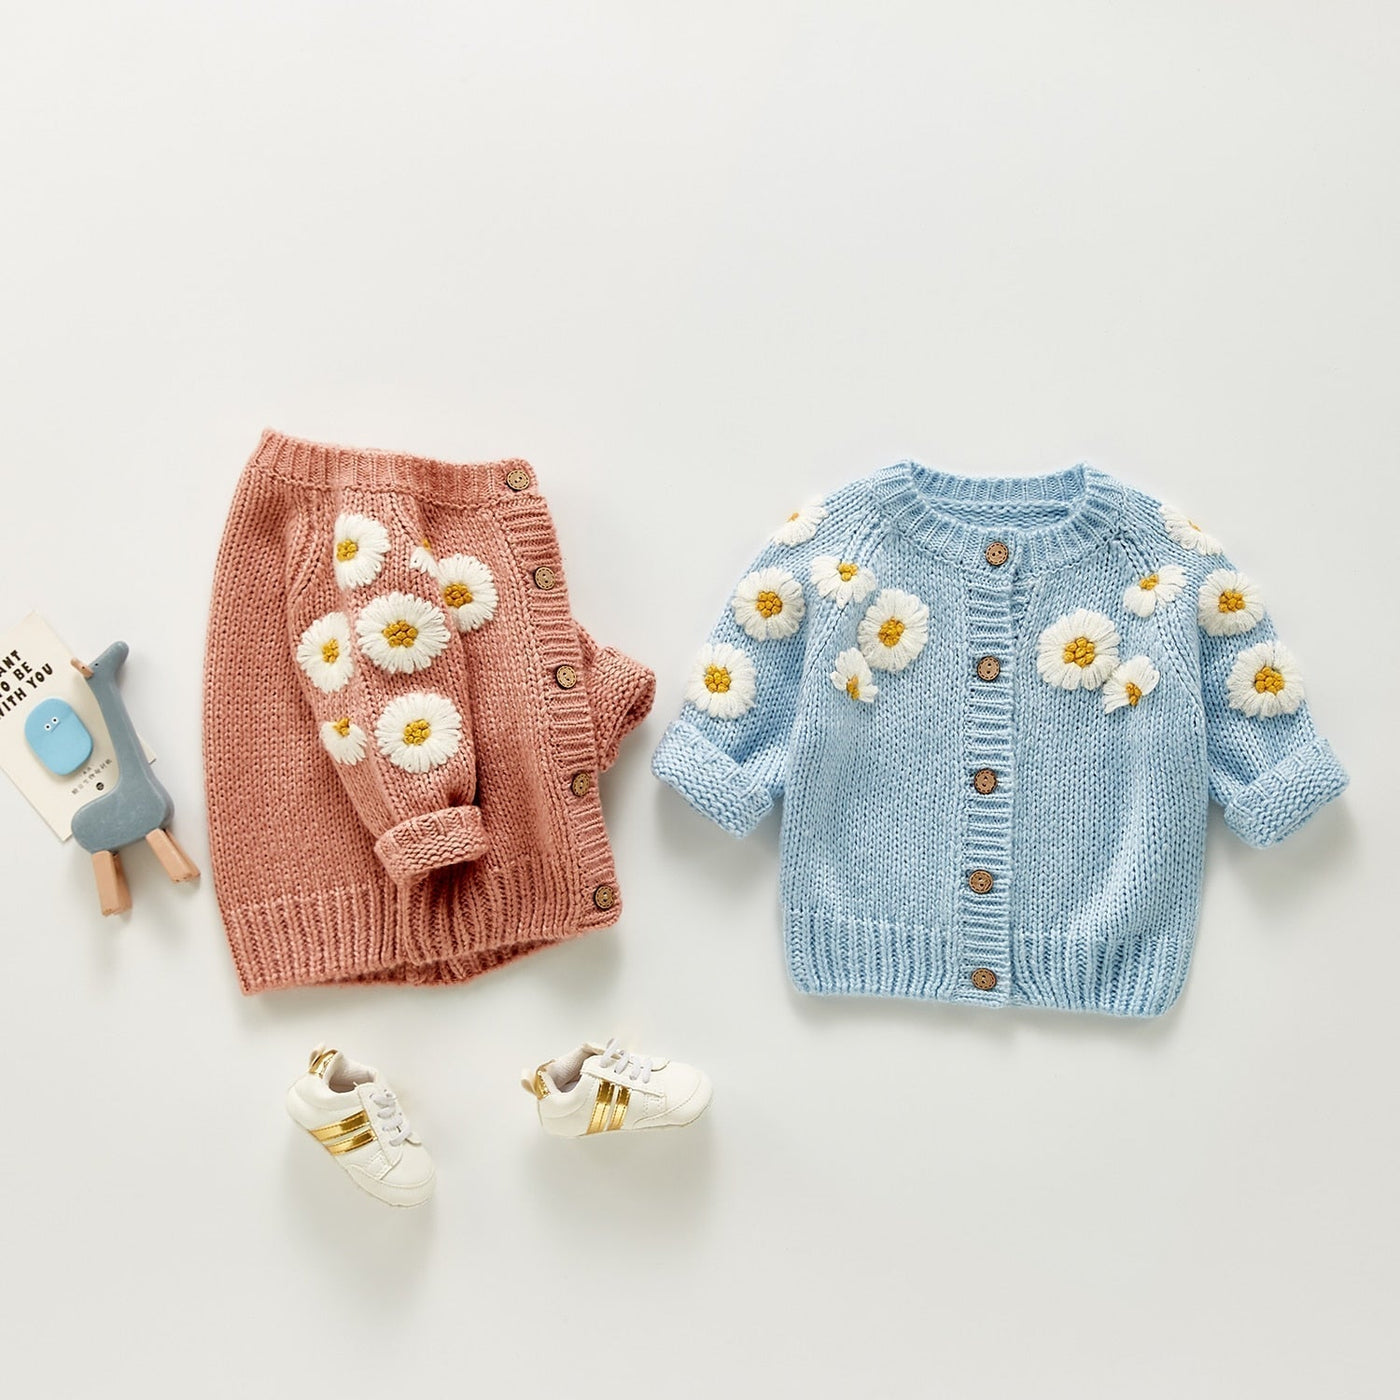 Dziewczęcy bawełniany sweterek z kwiatuszkami-Babylette